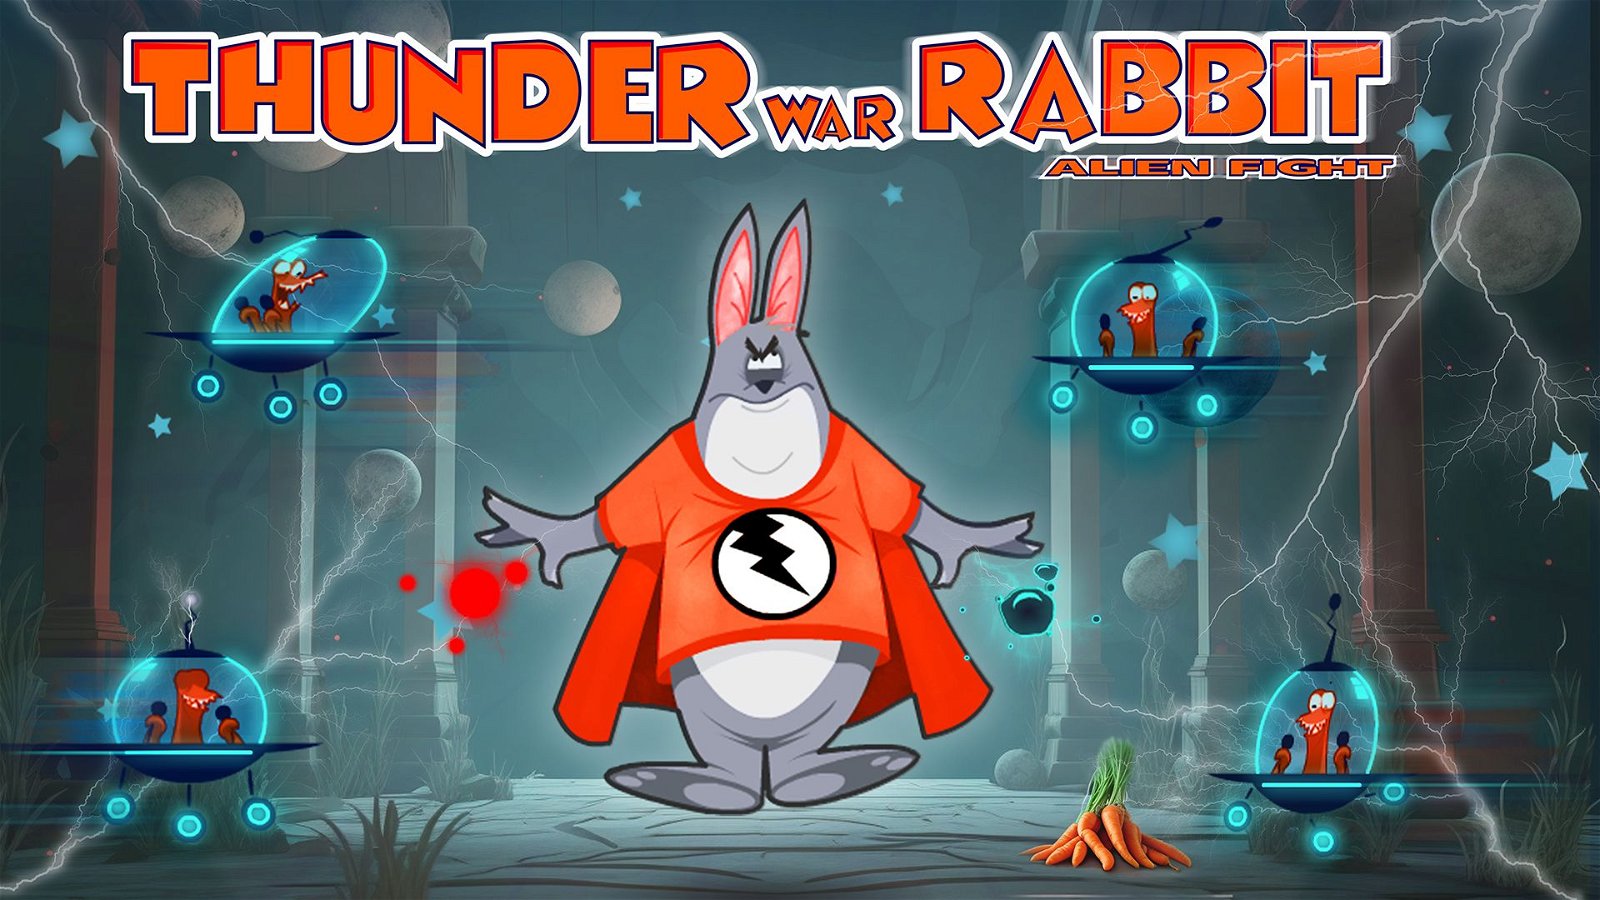 Image of Thunder War Rabbit Alien Fight